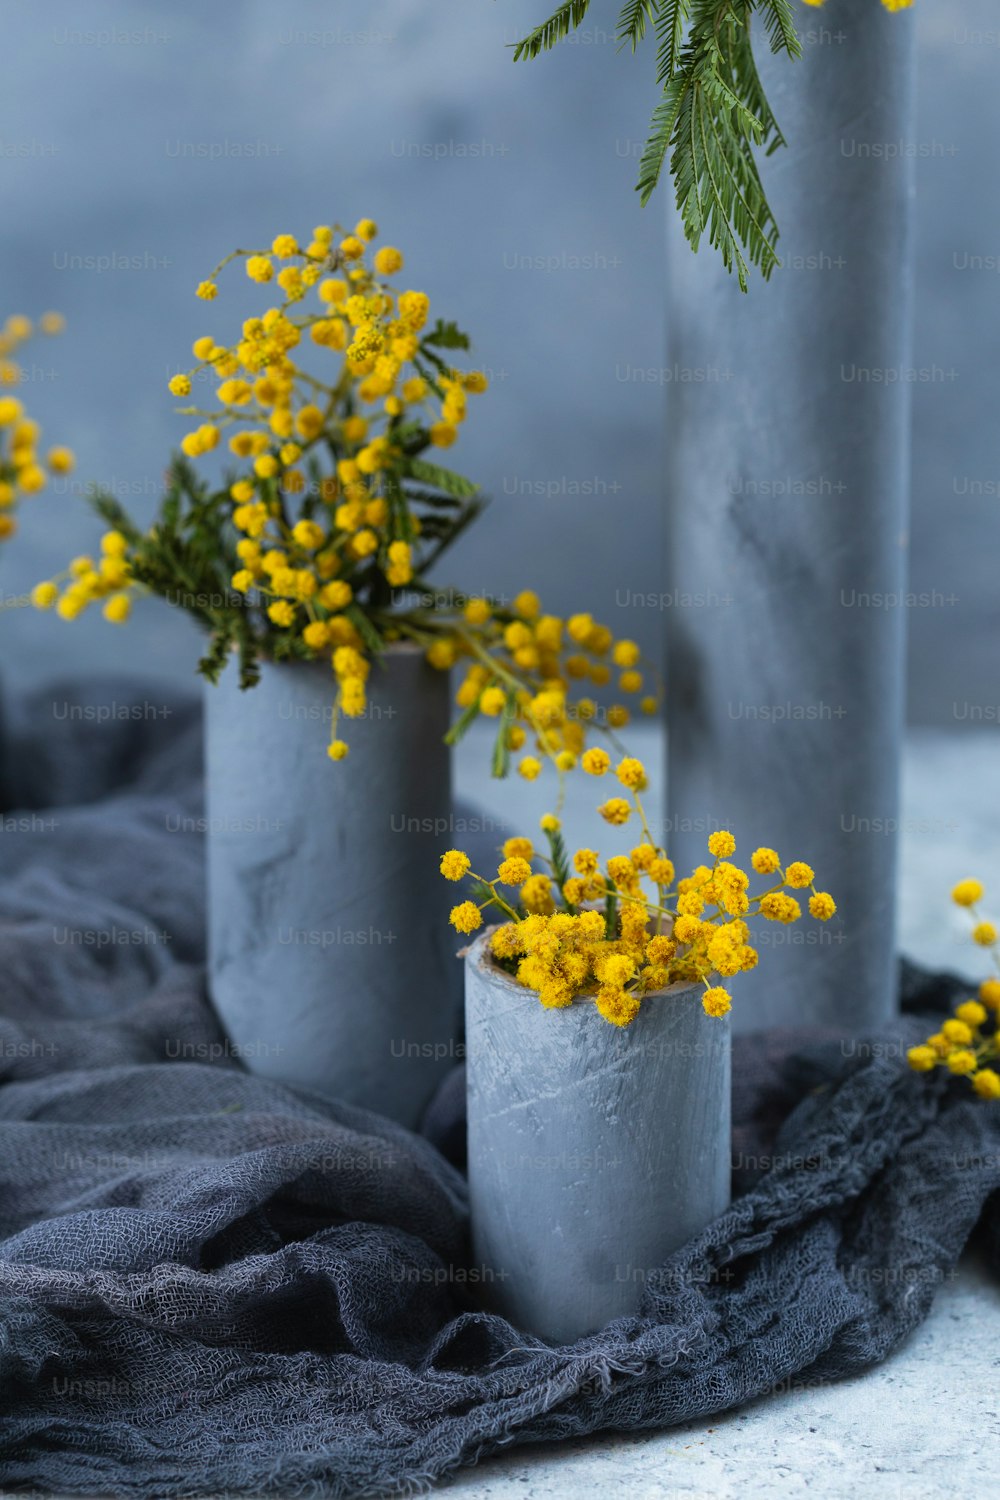 drei Zementvasen mit gelben Blumen darin